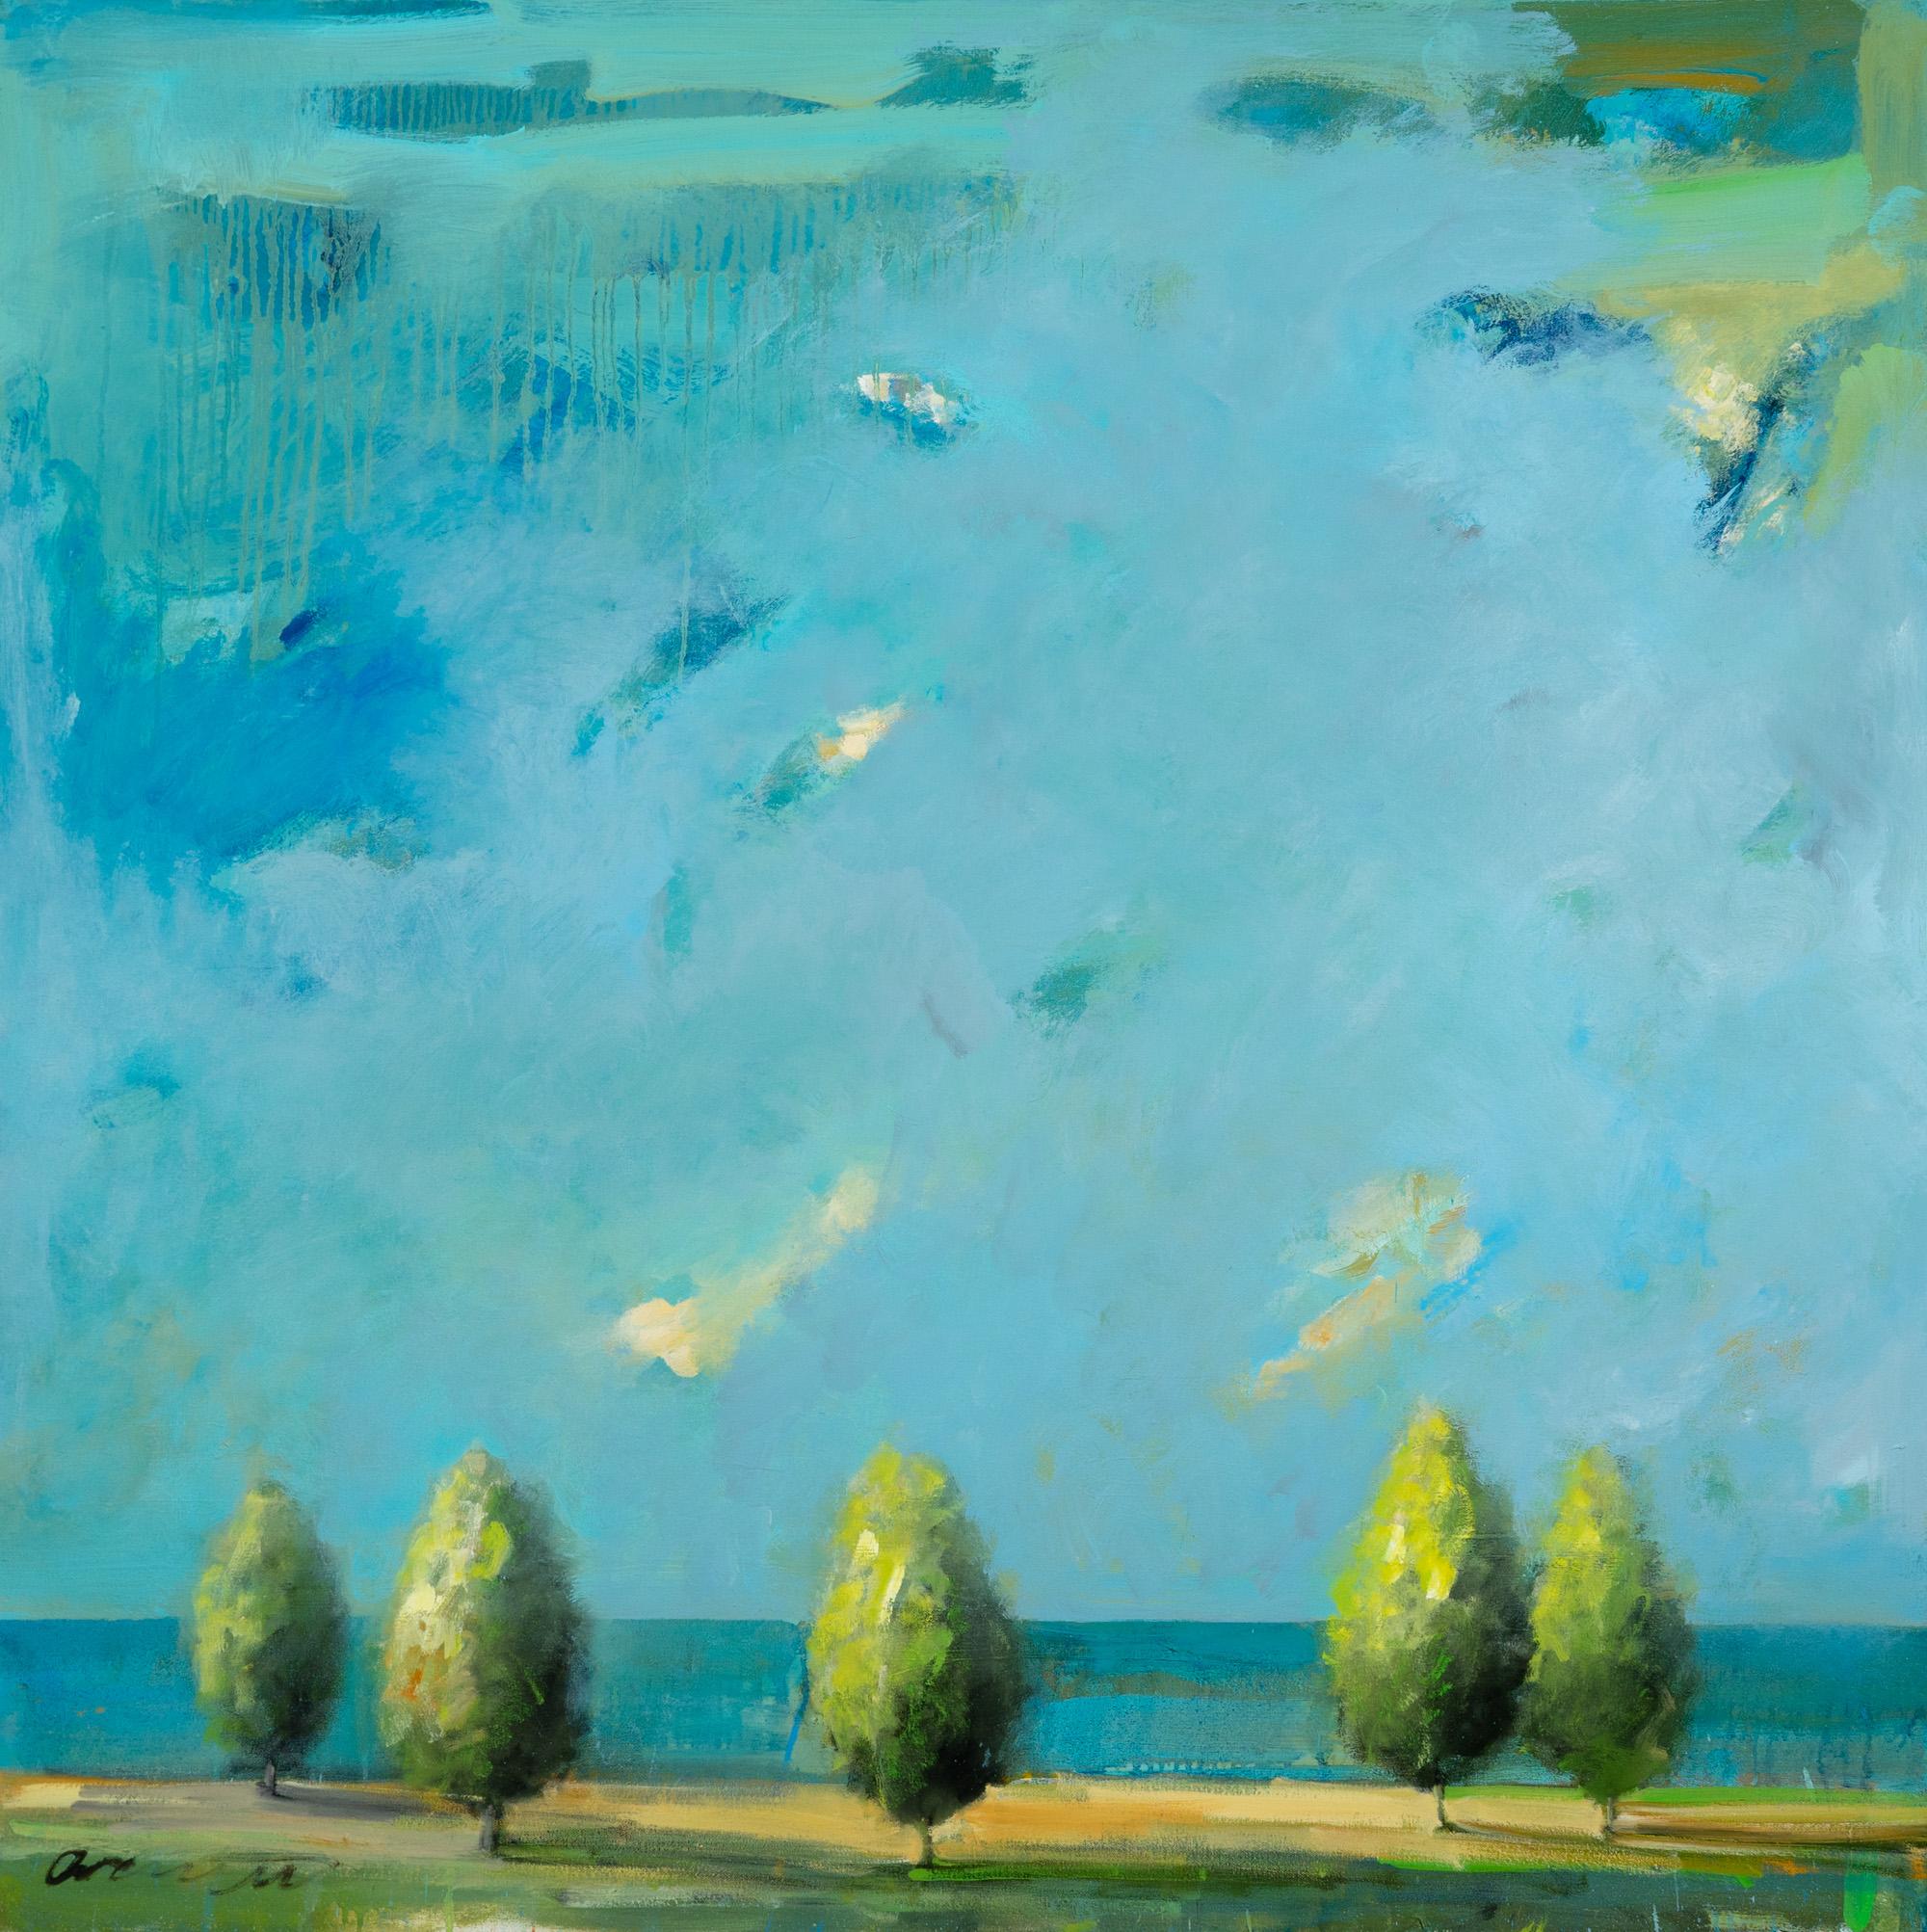 Landscape Art Eric Abrecht - « Tranquil Presence » Paysage paysager avec arbres, peinture à l'huile sur toile